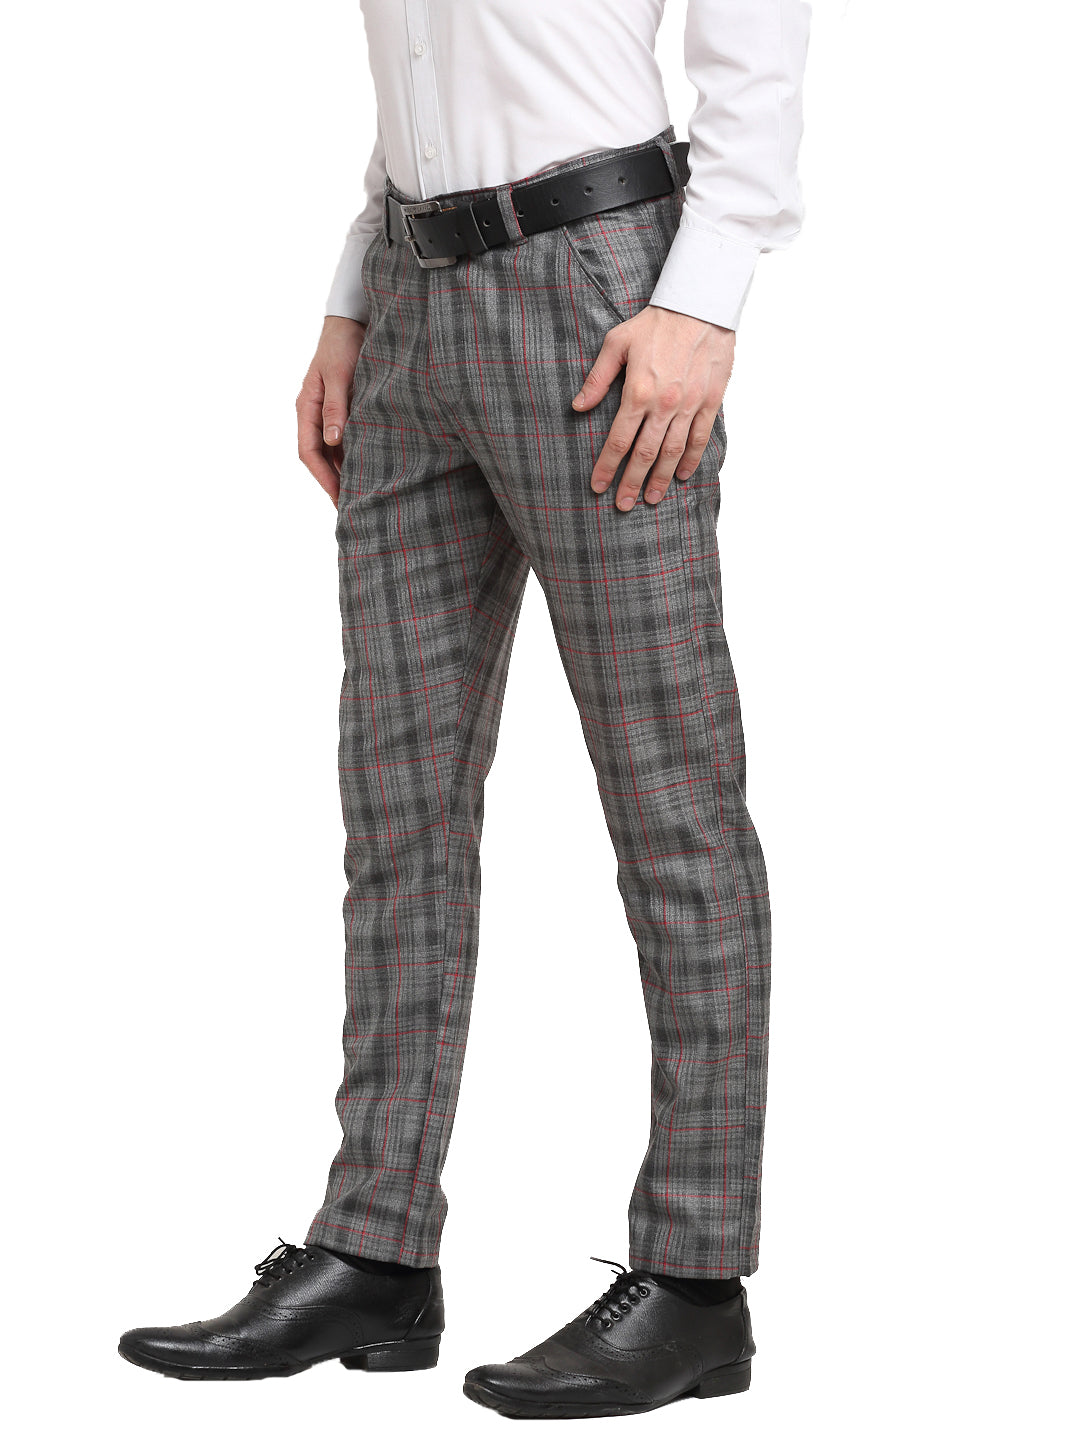 Medium Grey Check Trousers - Selling Fast at Pantaloons.com